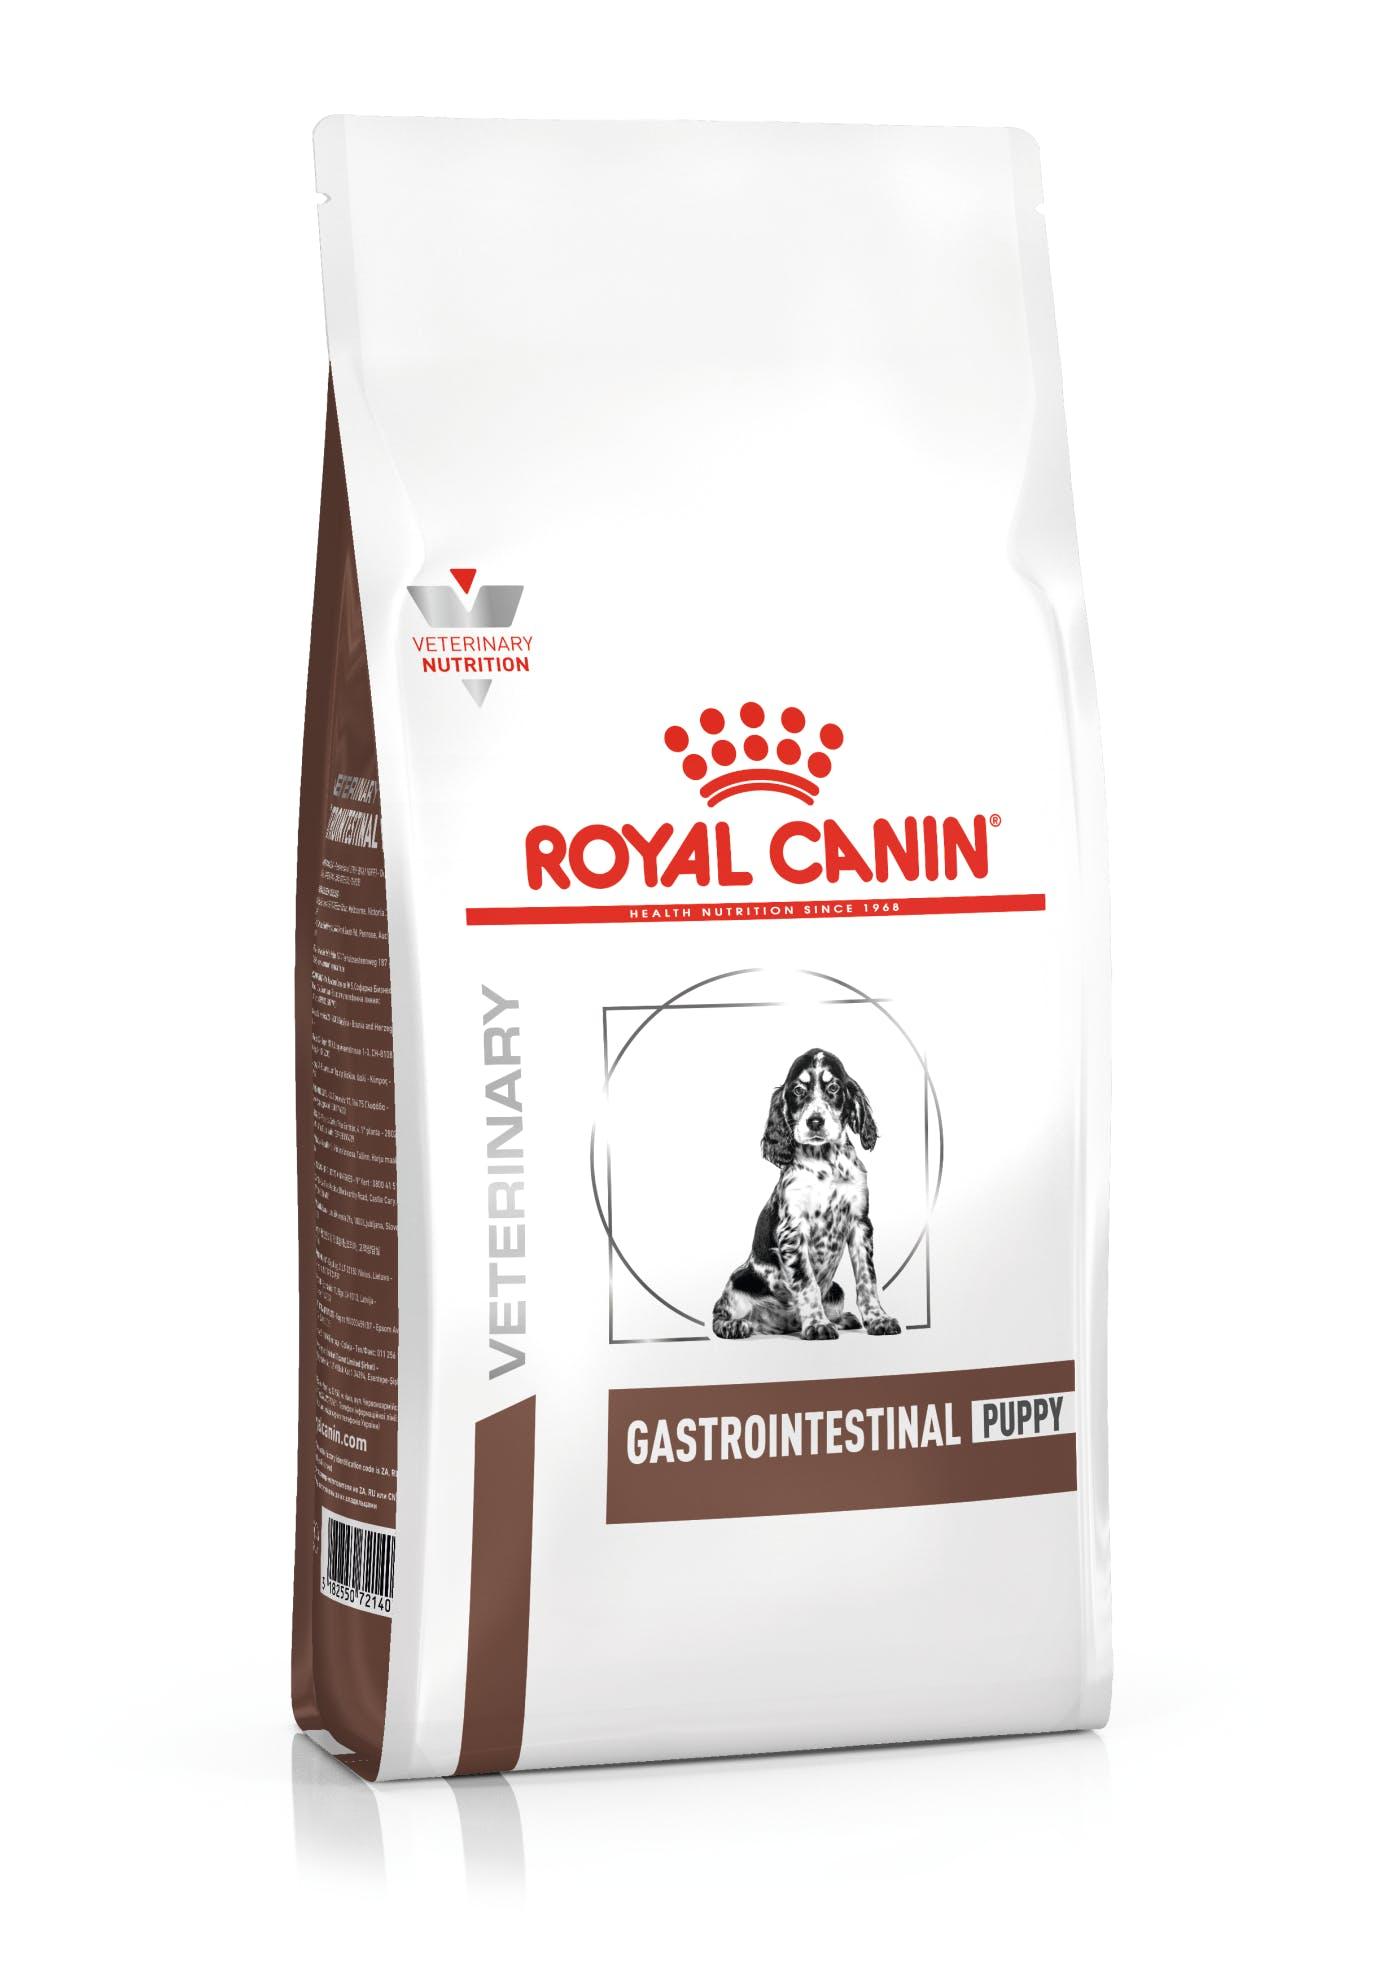 ROYAL CANIN VETERINARY DIET Medicinska hrana za pse Gastrointestinal Puppy 2.5kg